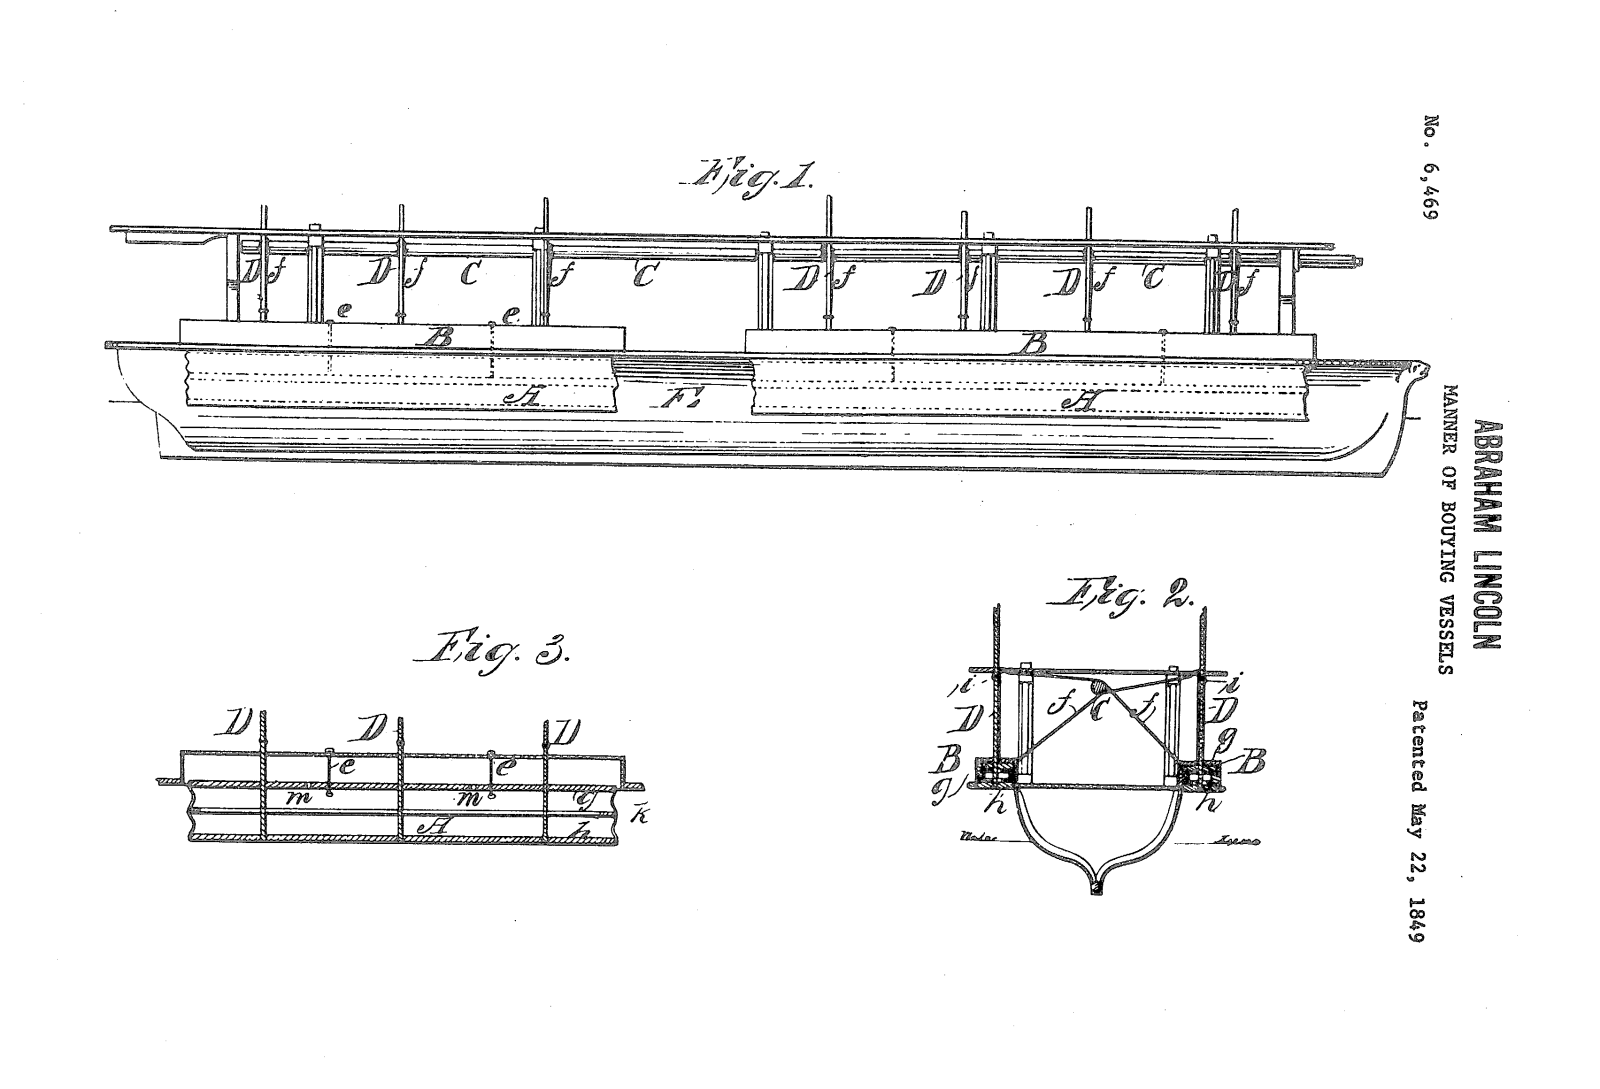 Lincoln's patent diagram